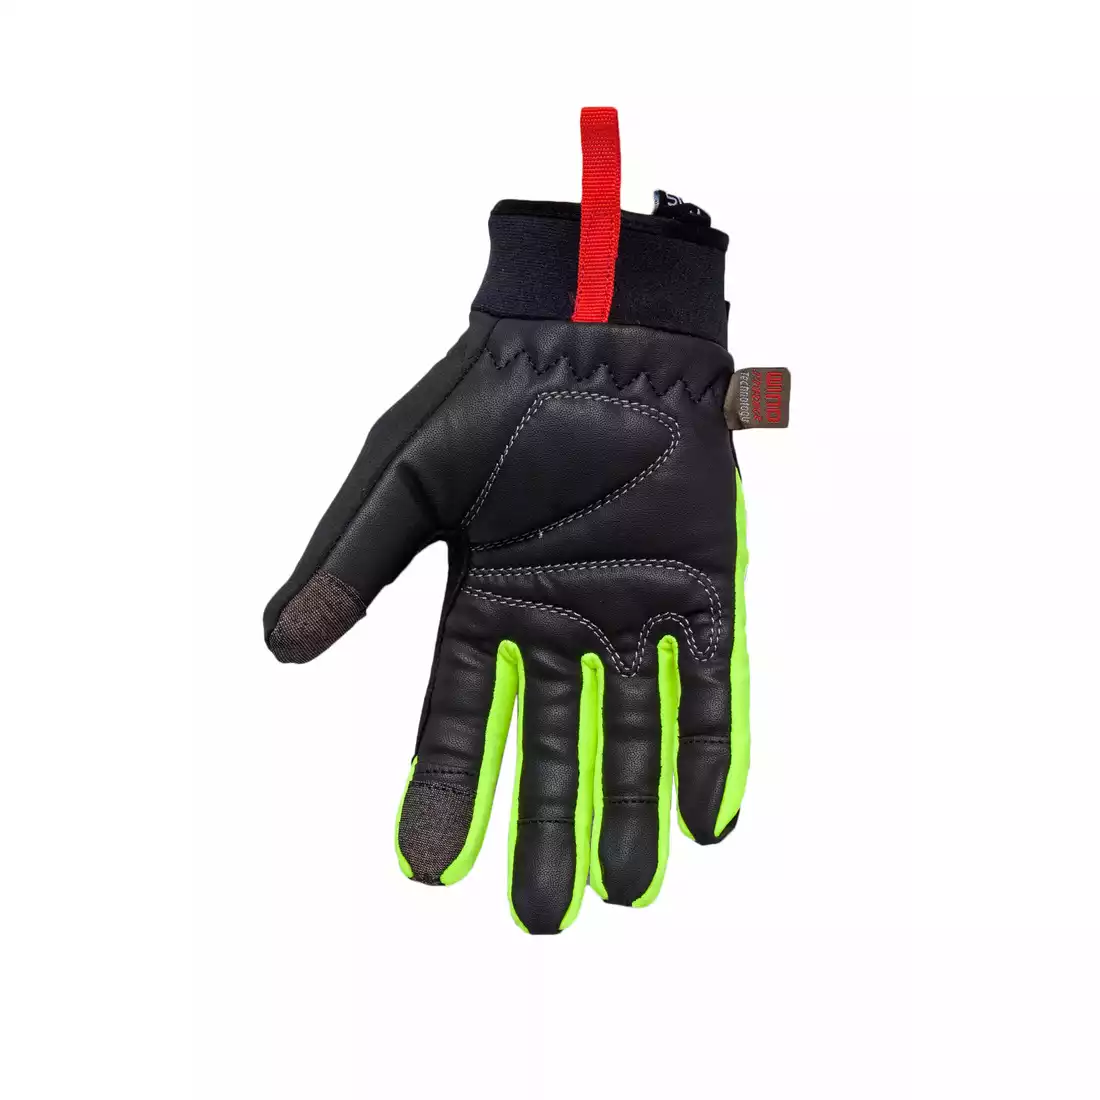 CHIBA zimowe rękawiczki TOUR PLUS, kolor: Czarno-fluorowy